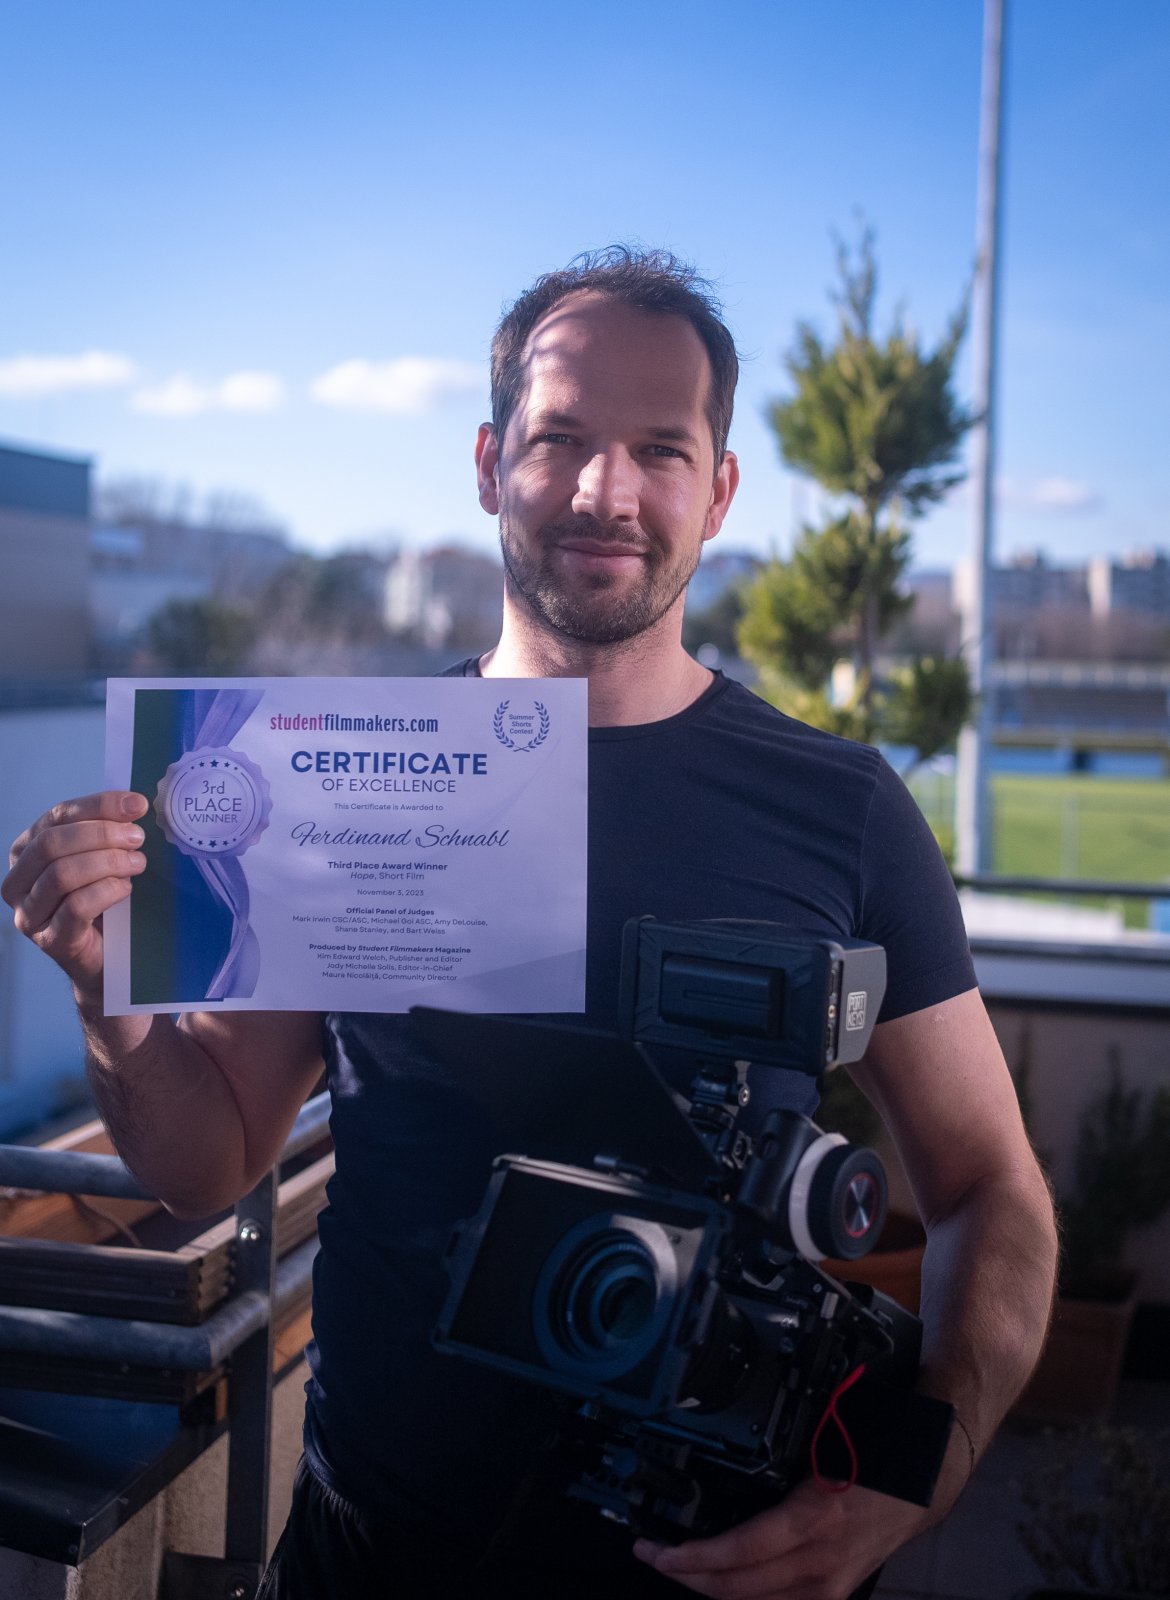 Student Filmmakers Certificate.jpg